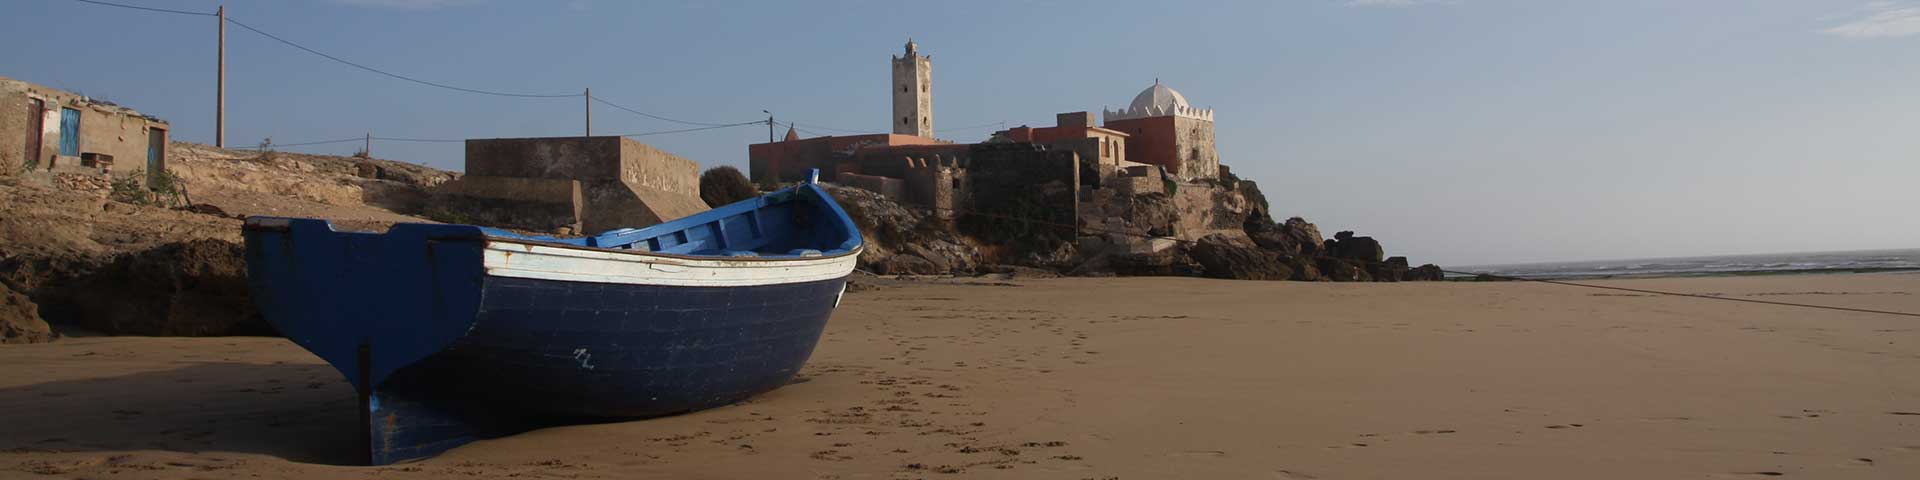 Essaouira Moulay Bouzerktoun